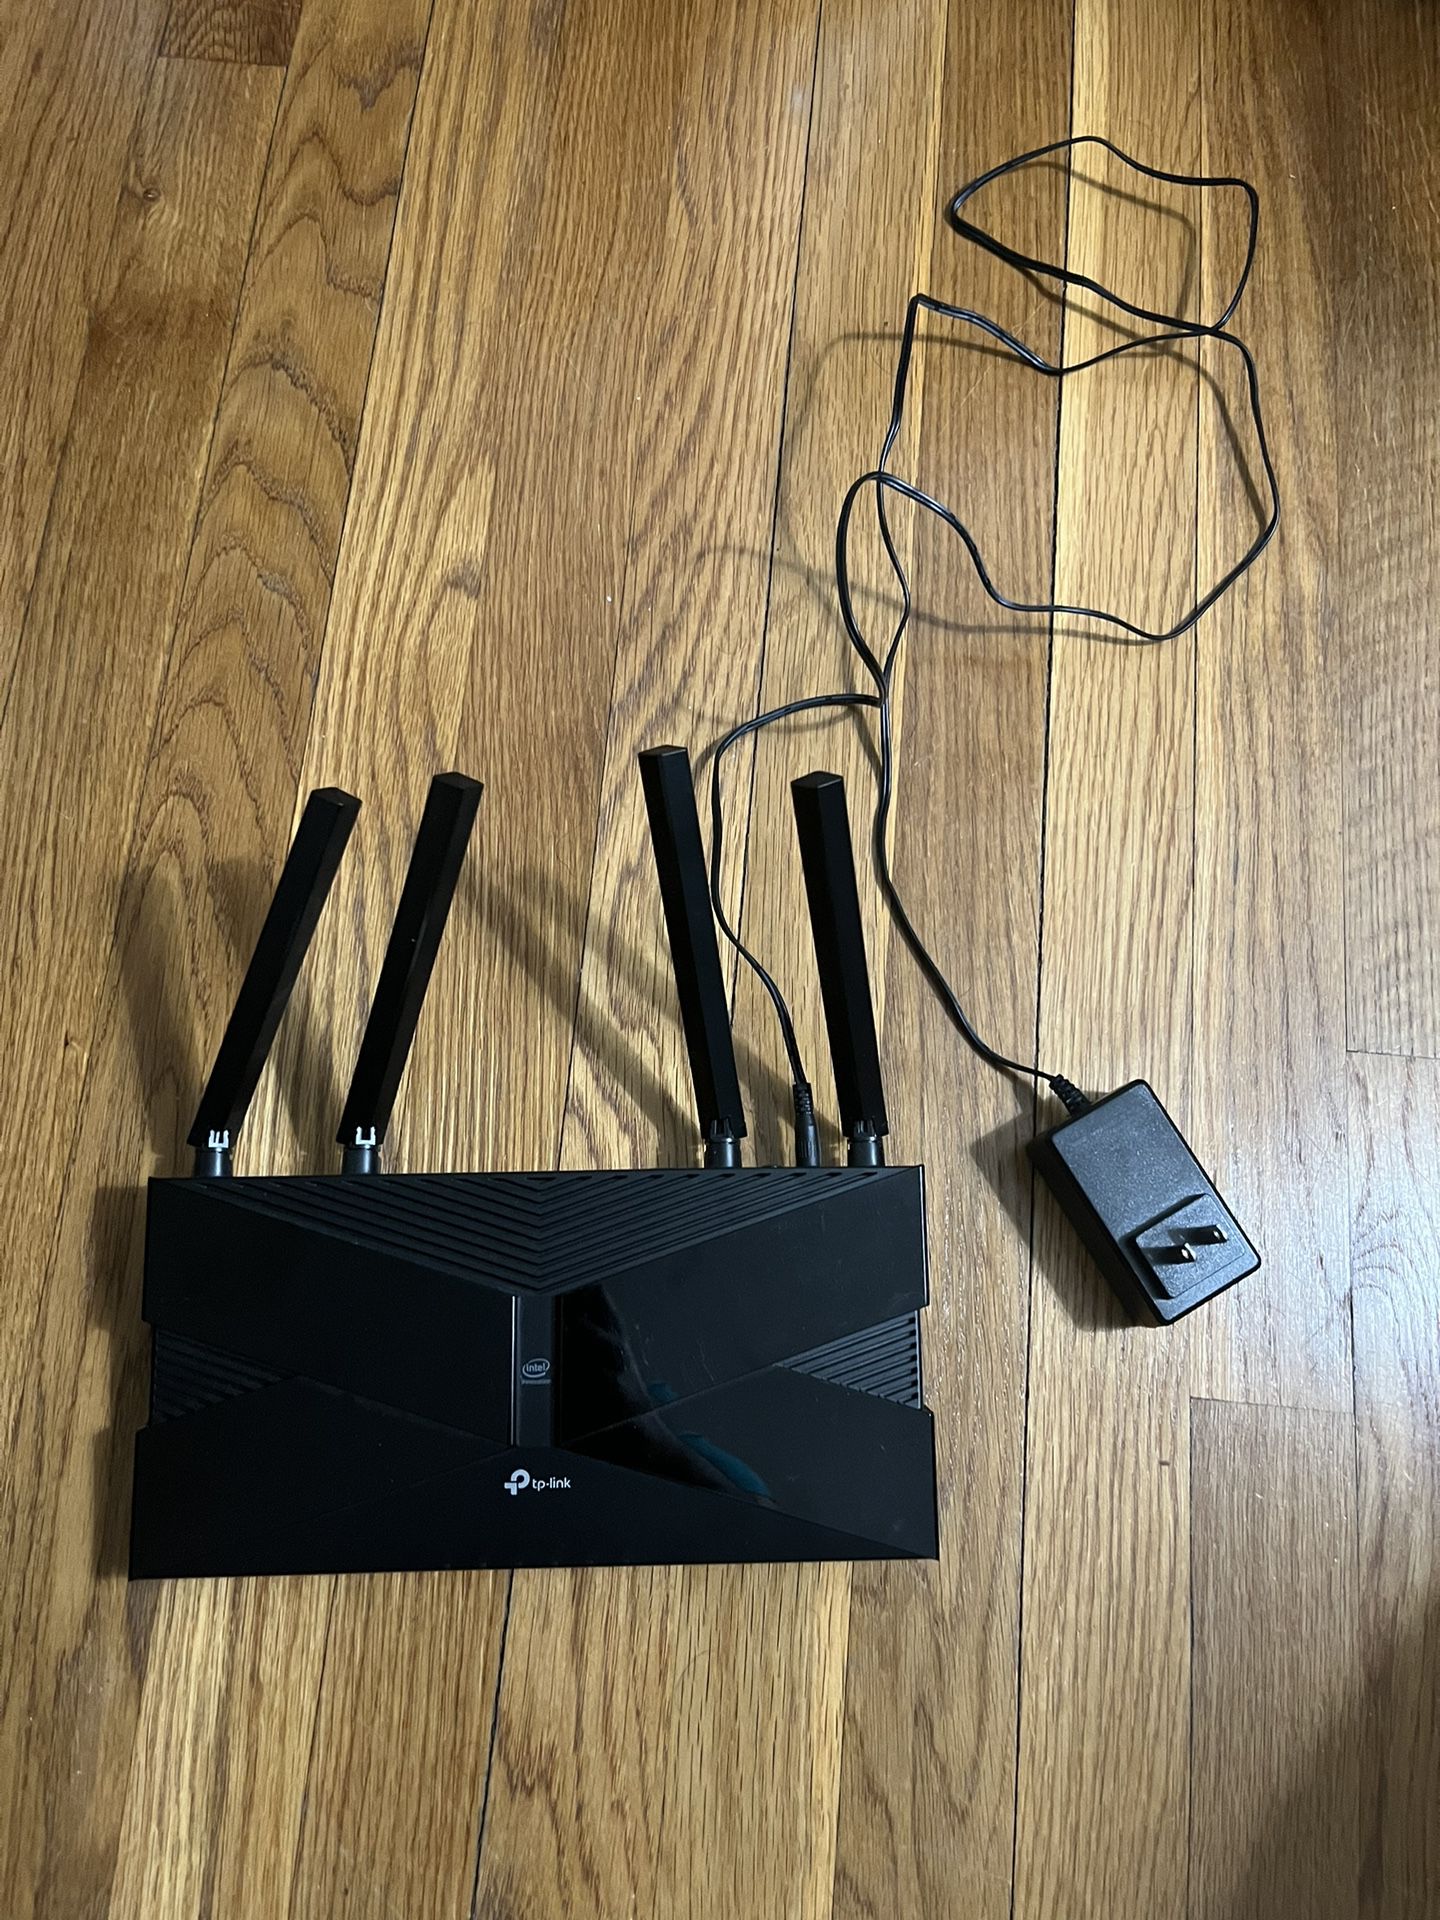 TP Link AX3000 Gigabit Router